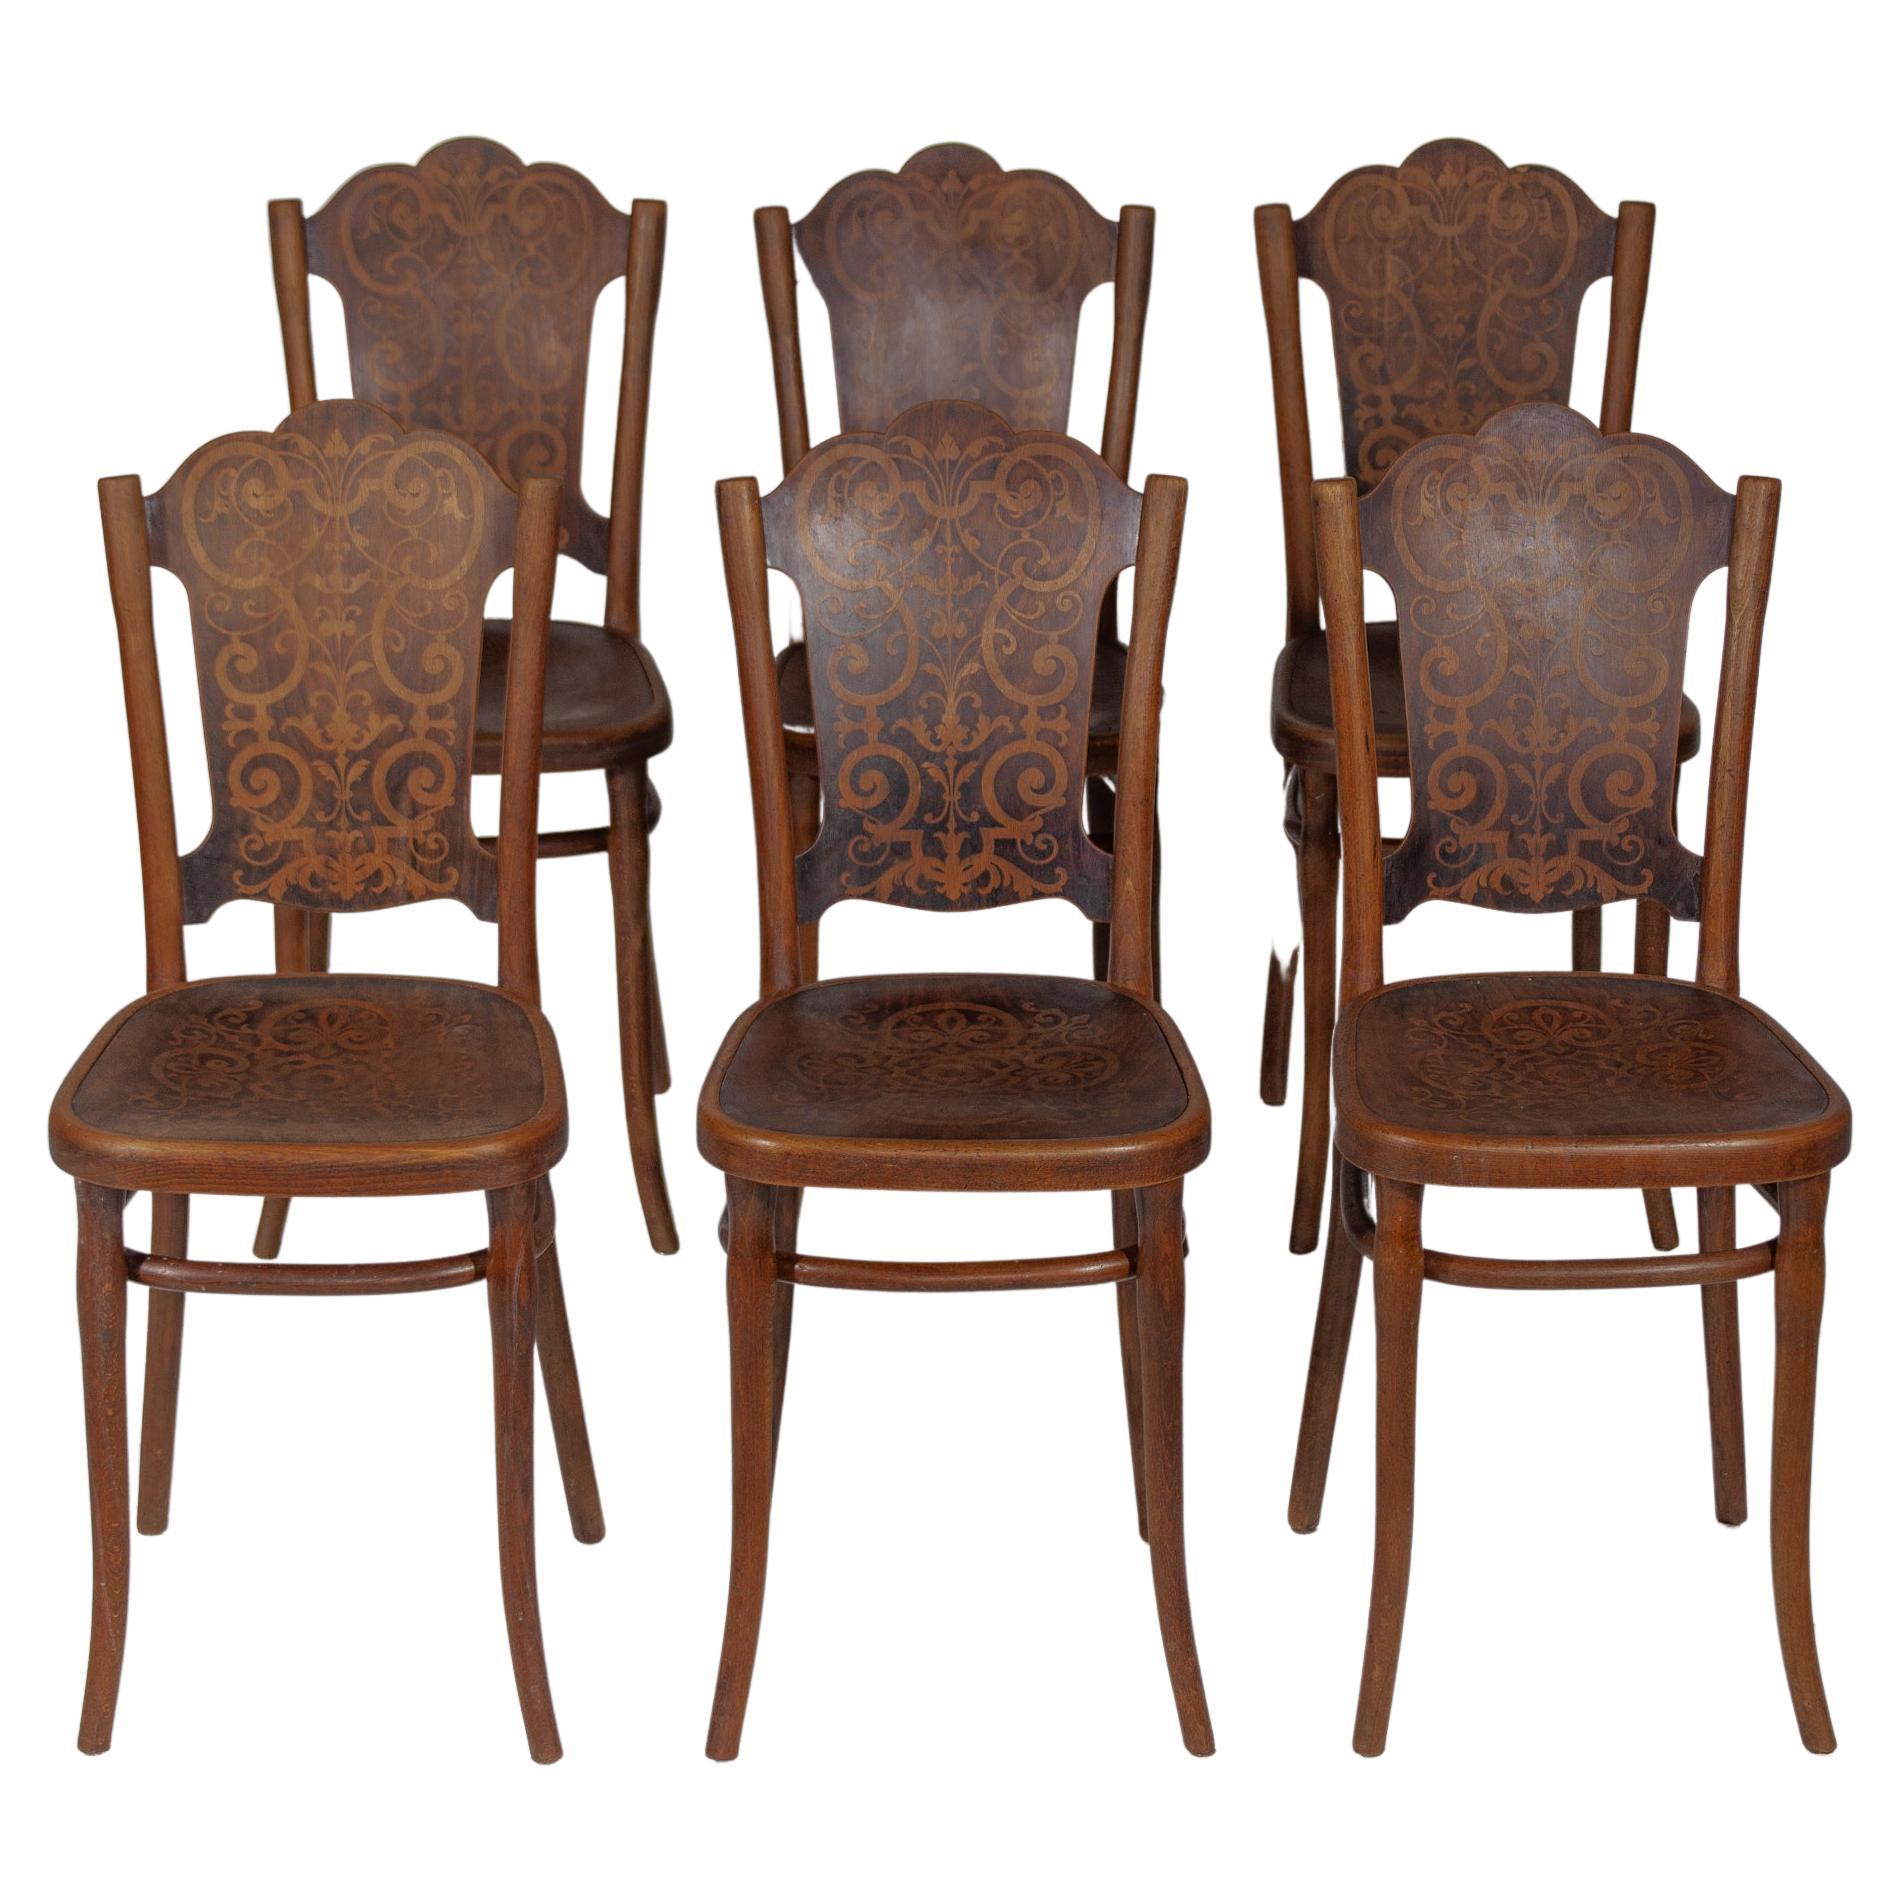 Très bel ensemble ancien de six chaises Thonet de style Art Nouveau avec un motif imprimé. Toutes les chaises sont étiquetées avec le logo original en papier de THONET. Design/One de chaque chaise avec patine et accents bruns de caractère, chaises